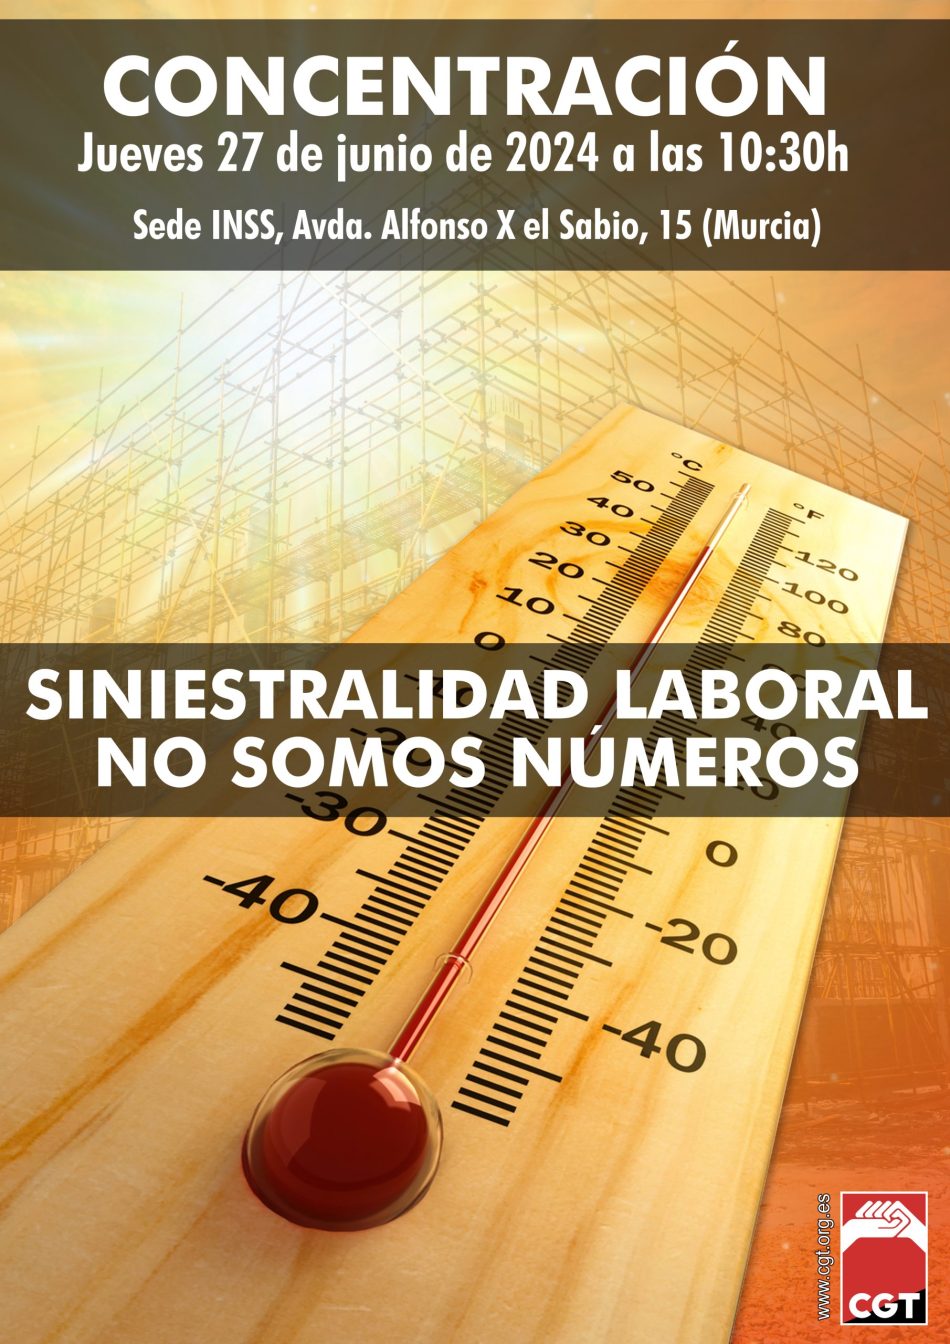 CGT señala la elevada tasa de accidentes laborales en Murcia y anuncia movilizaciones ante el INNS